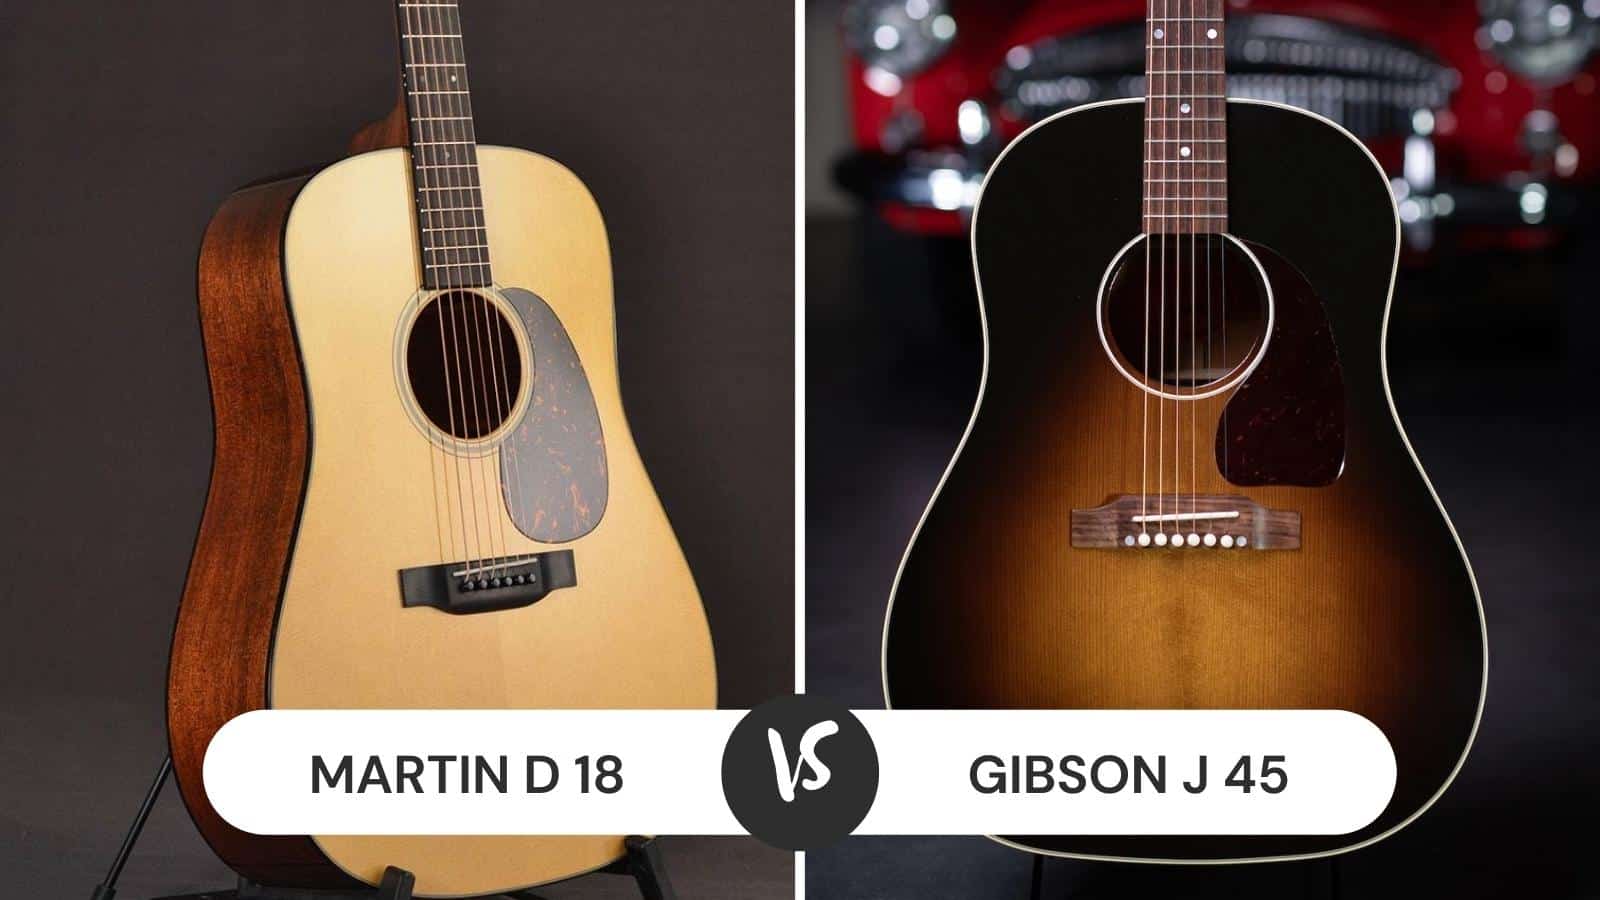 Martin D 18 vs Gibson J 45